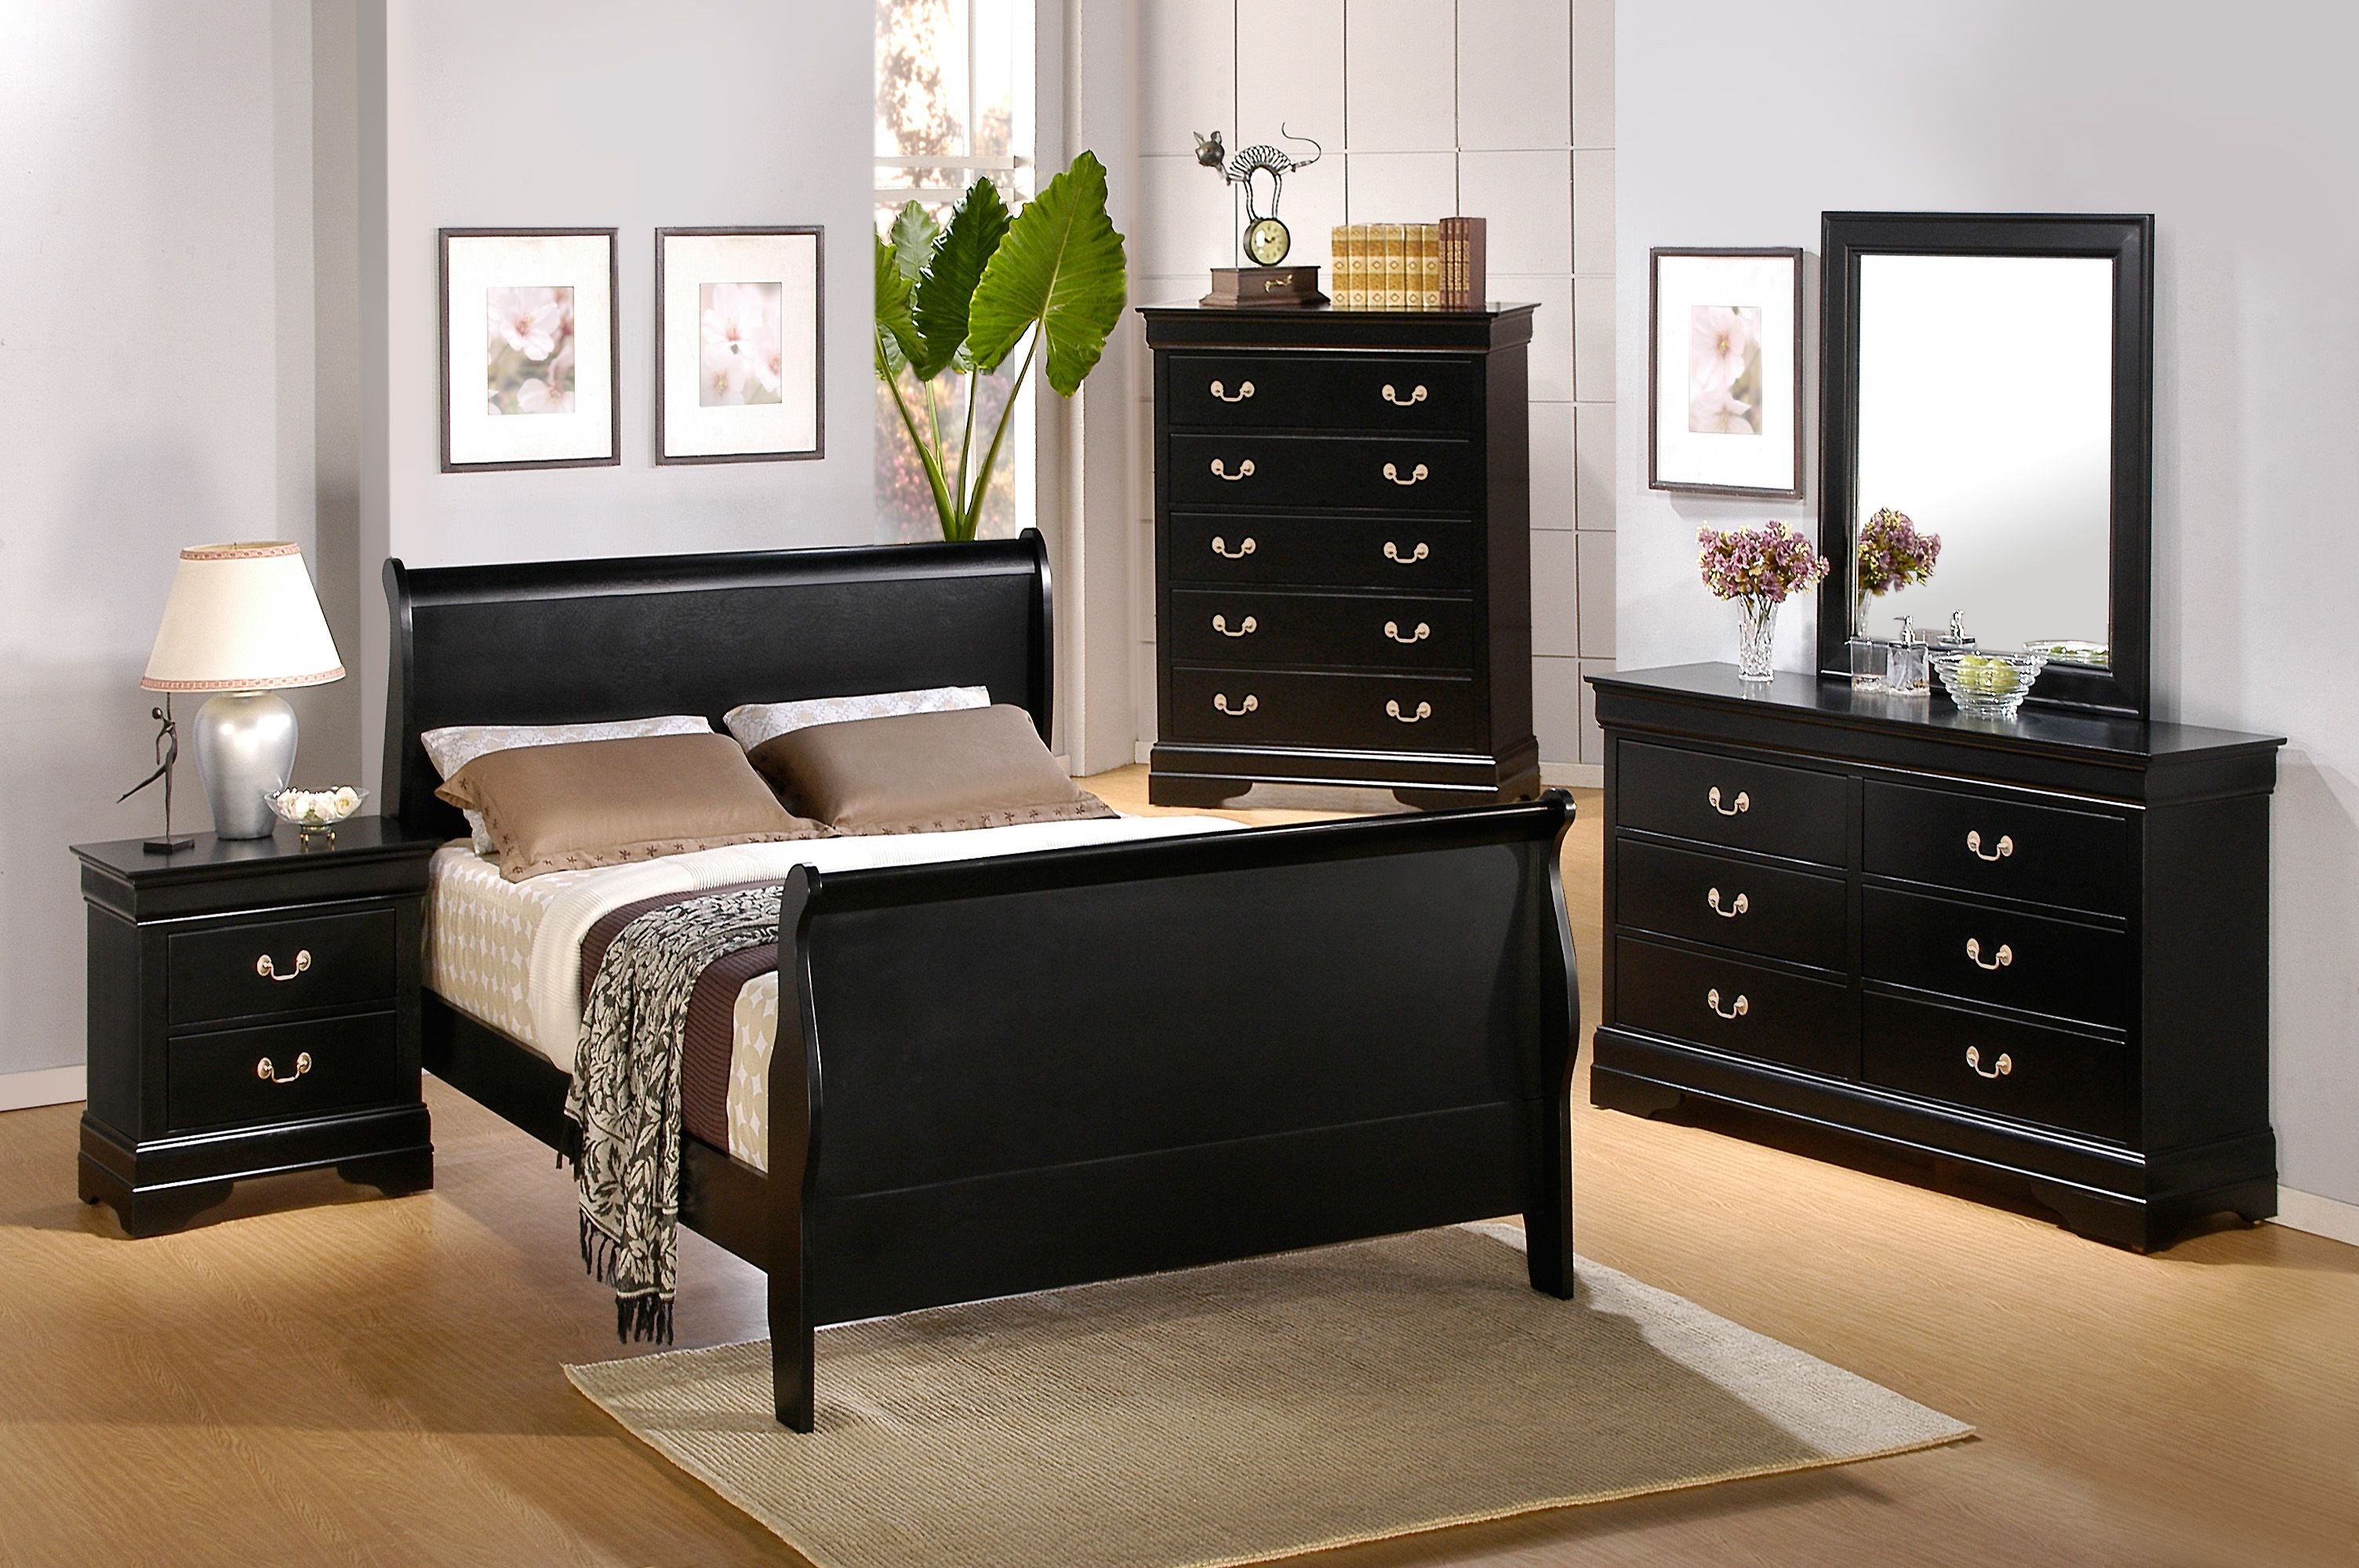 Dark Wood Bedroom Furniture Elegant Bedroom Furniture Dressers Best for Homes